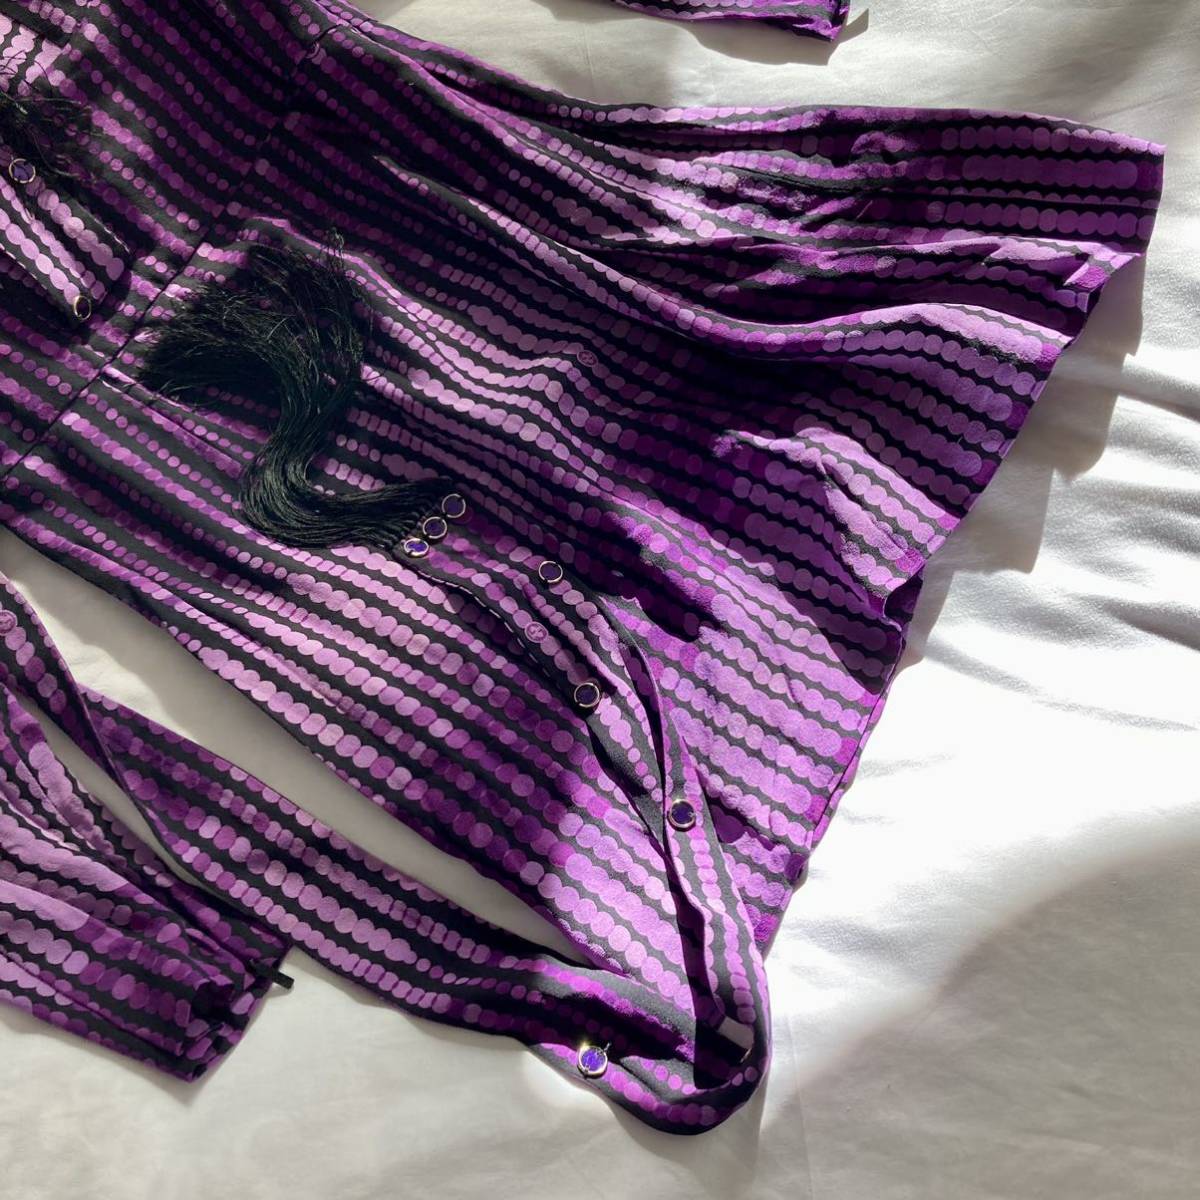  внутренний стандартный прекрасный товар #Gucci/ Gucci One-piece / платье шелк 100%/dot полька-дот узор длинный рукав внутренний имеется Ran way размещение purple/tie specification 